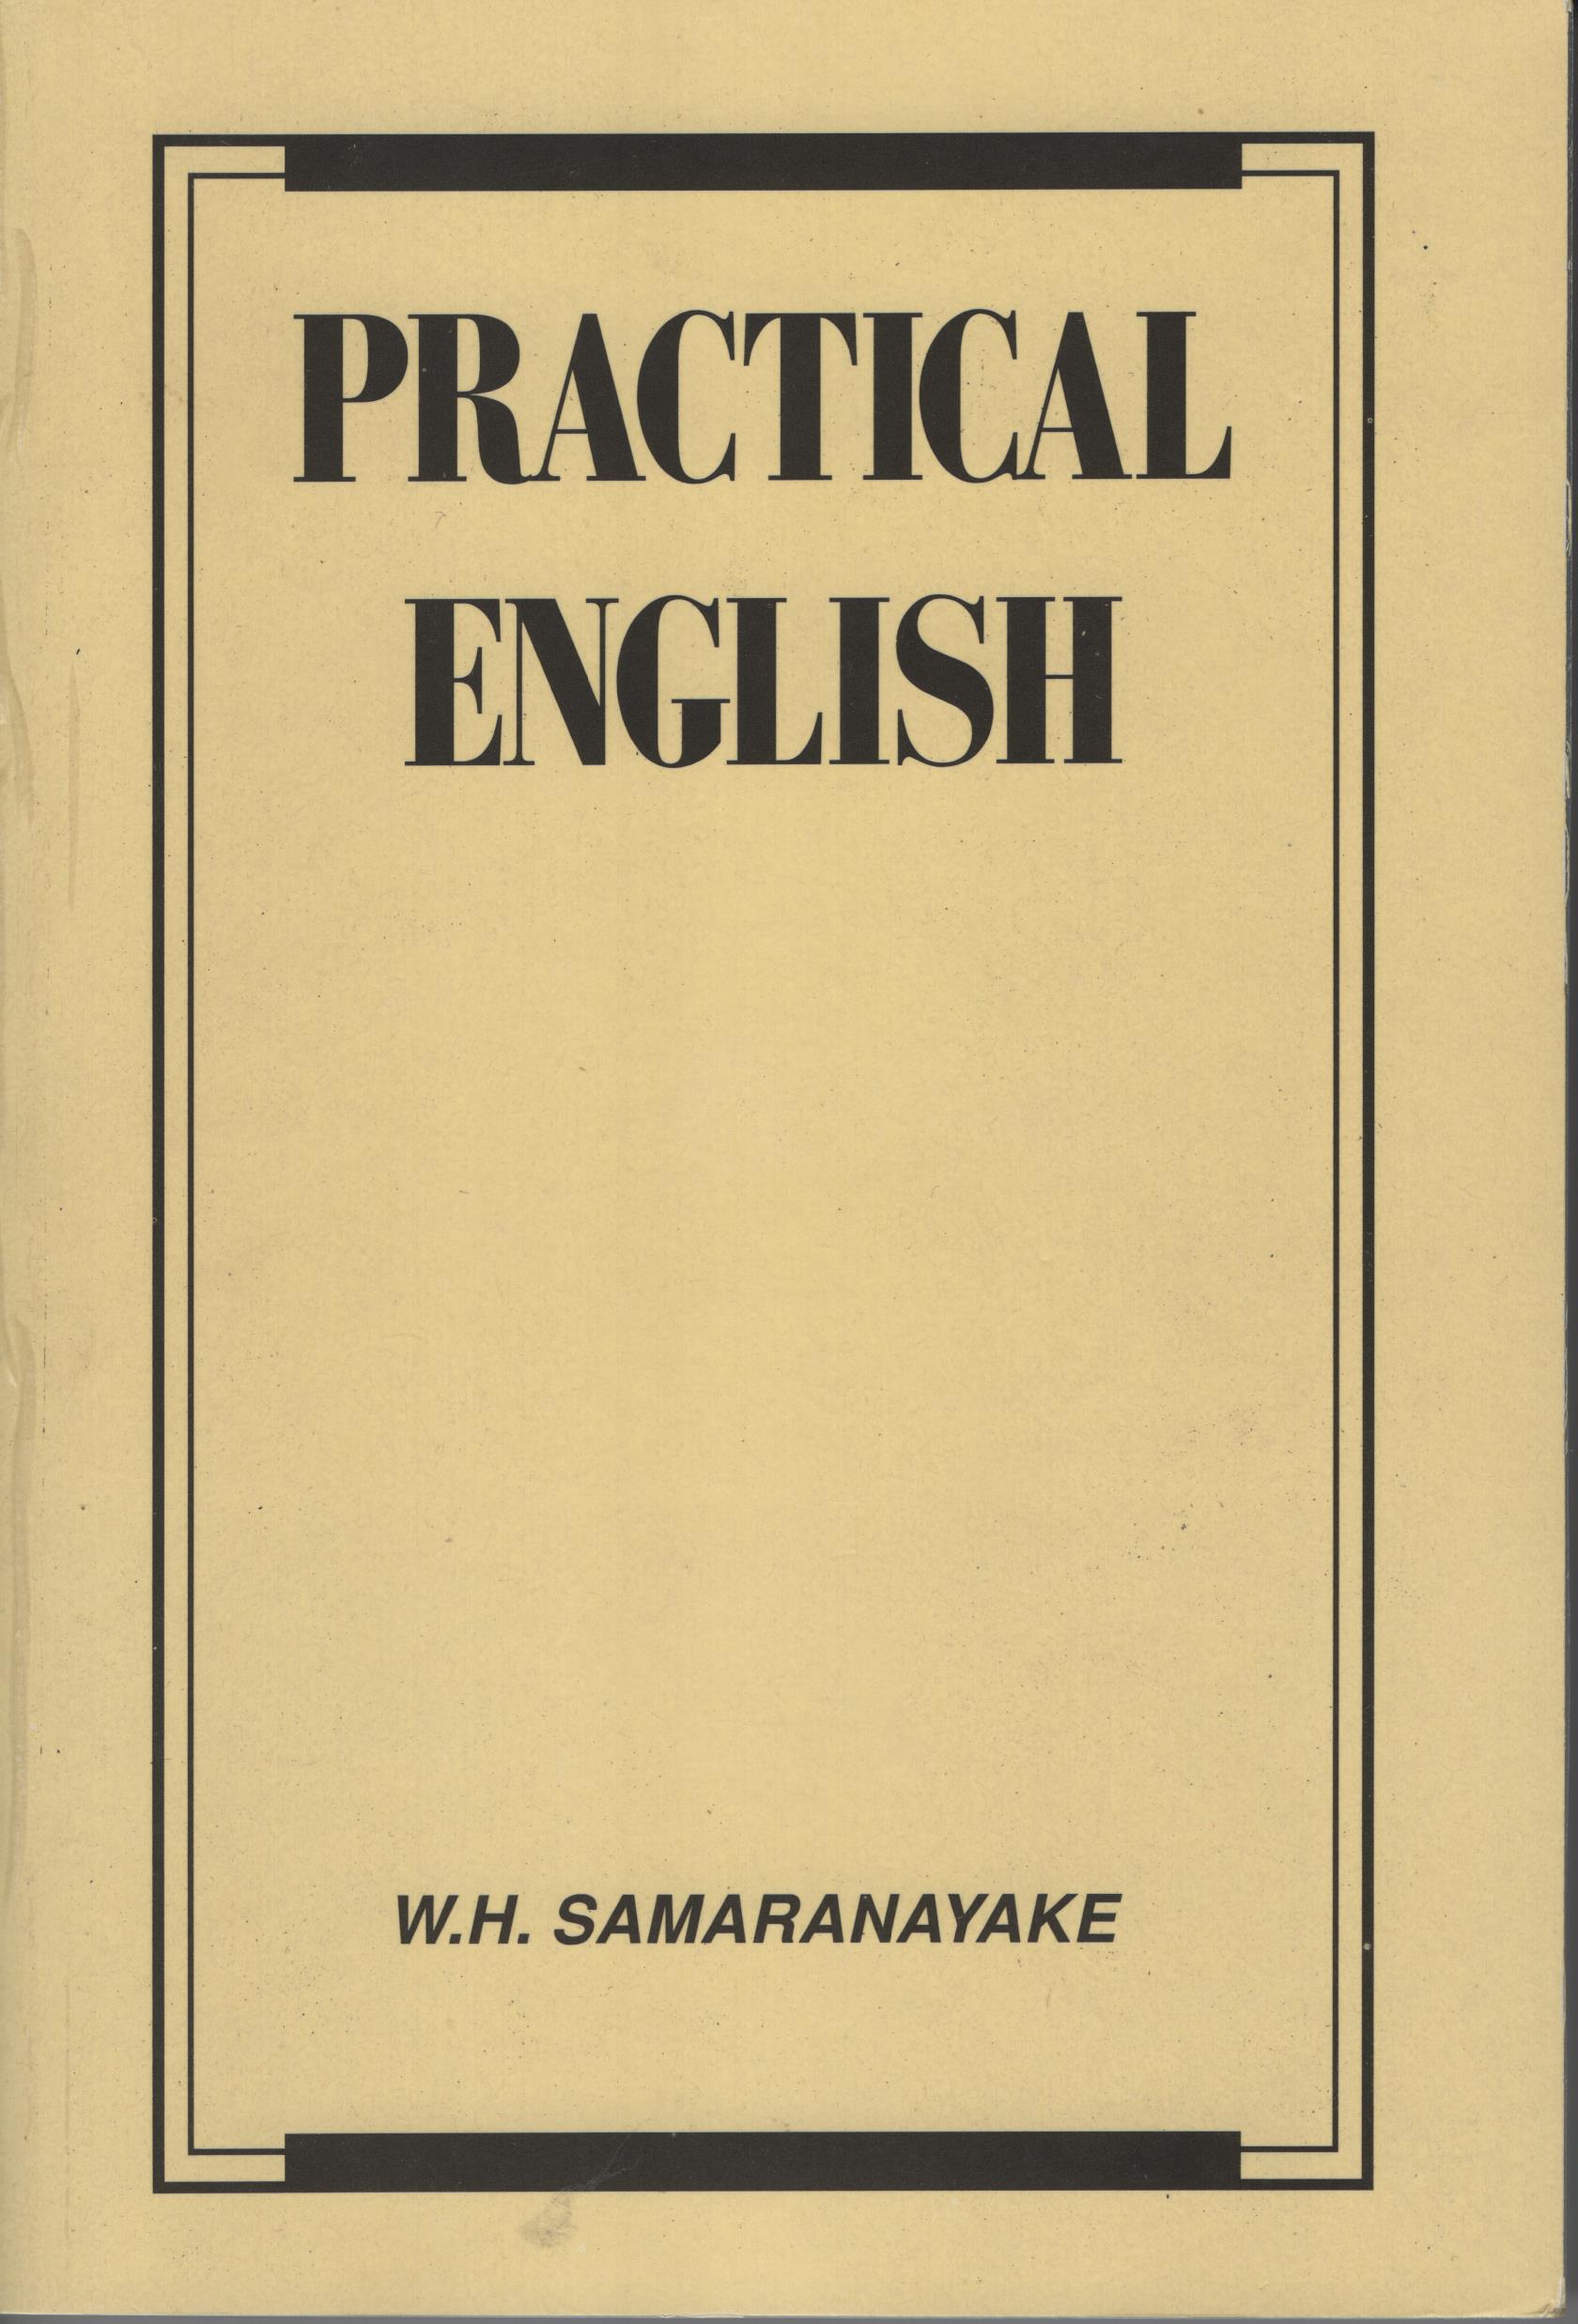 Practical English